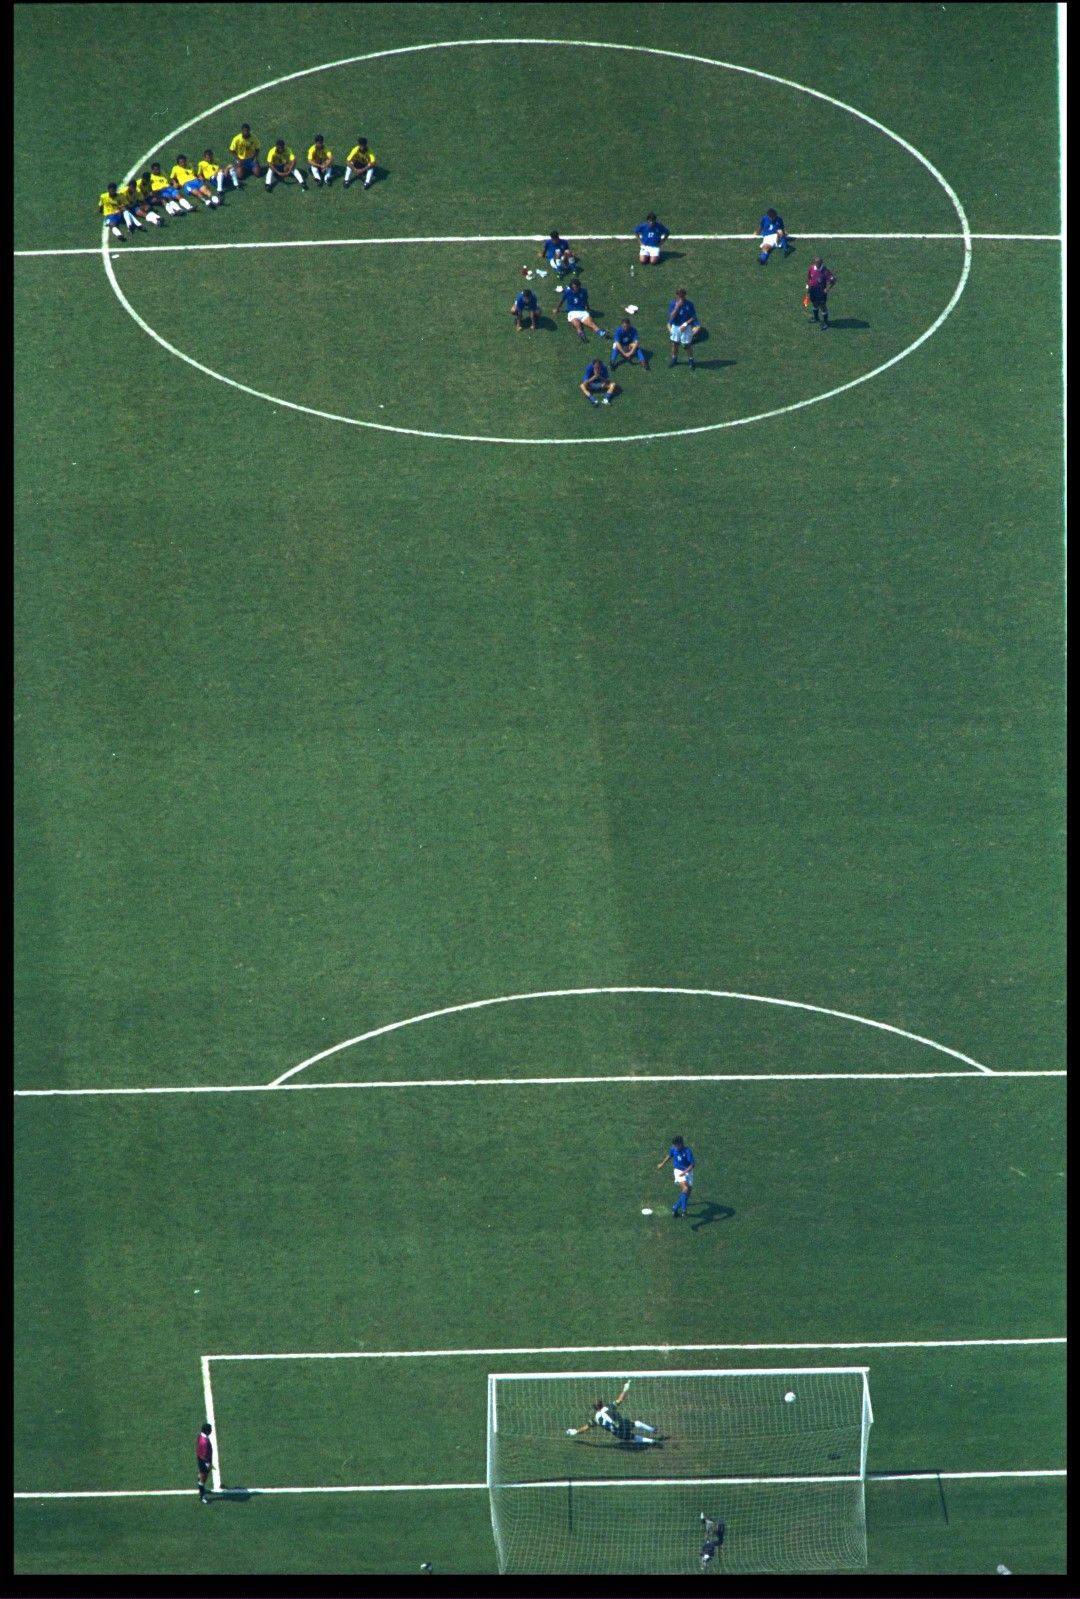 Култов фотос от първите в историята серии от наказателни удари, решили финал на Мондиал - през 1994 г. на "Роуз Боул" в Пасадена, Бразилия - Италия.